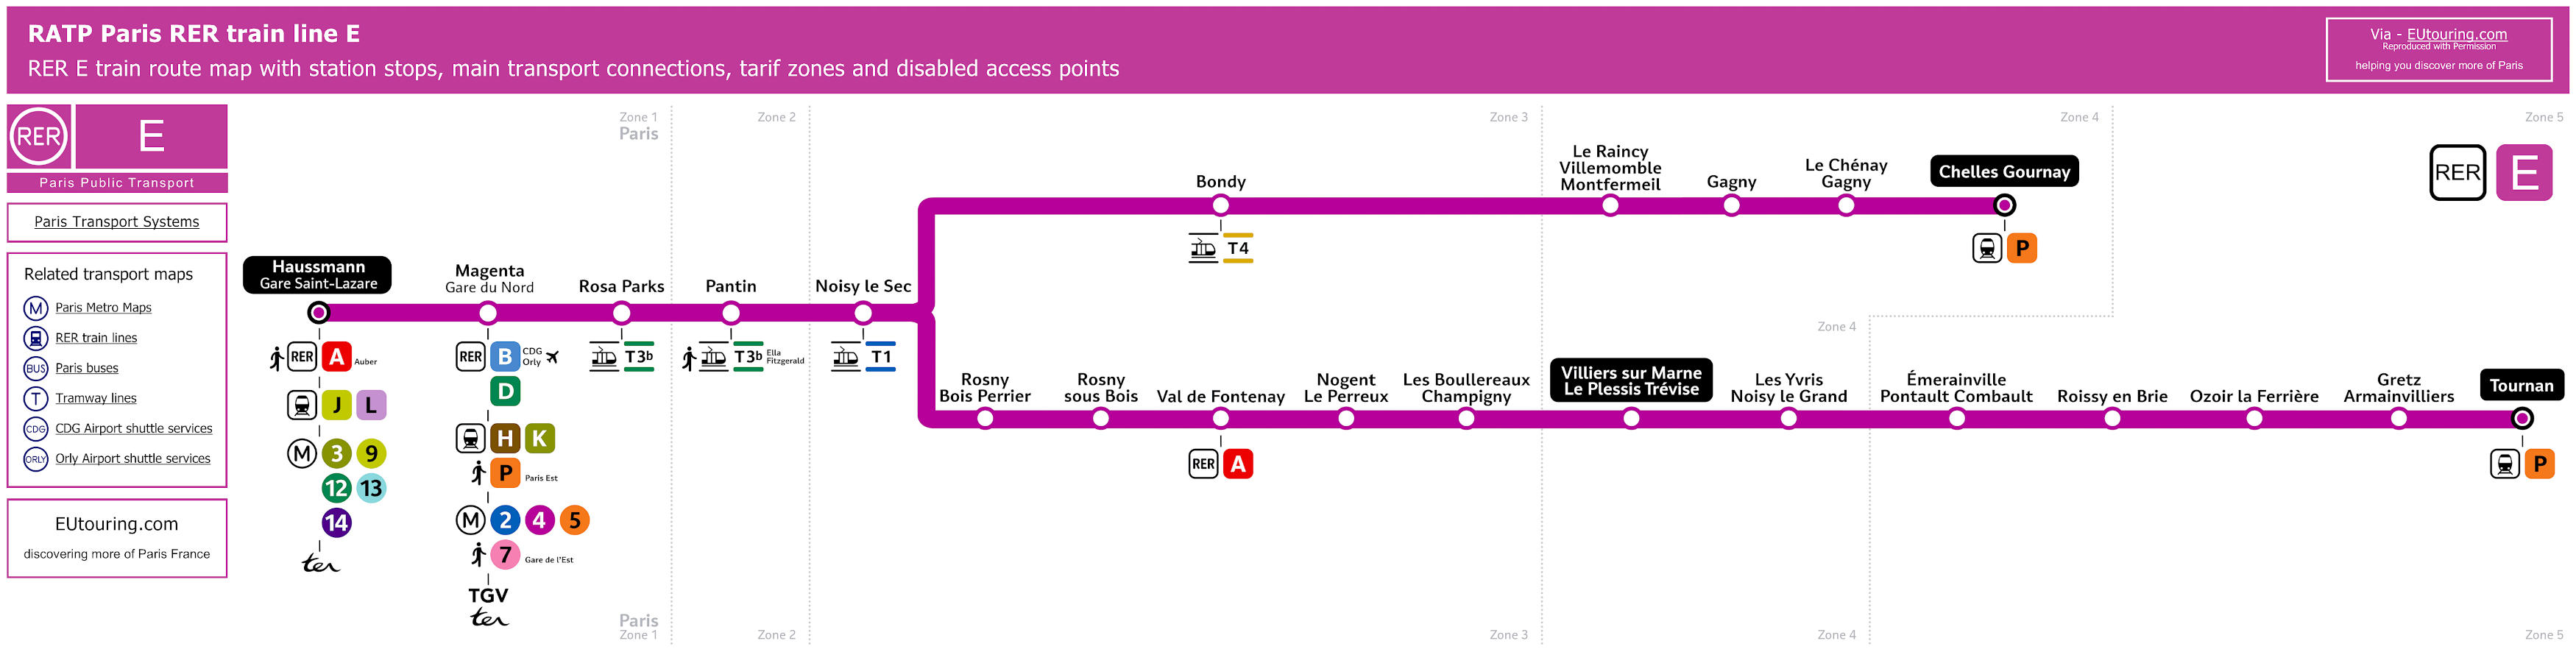 SNCF Transilien and RATP RER Train maps for Paris Ile de France